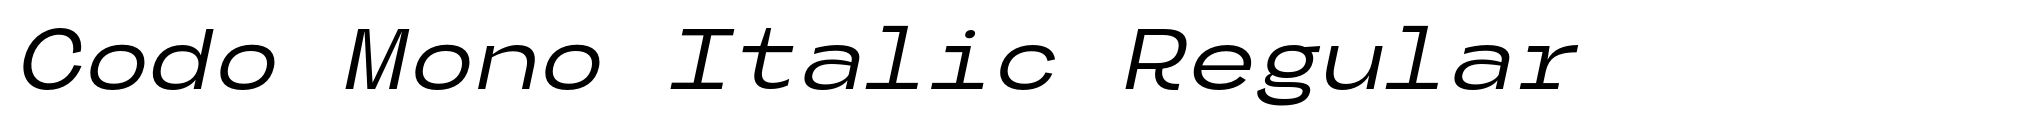 Codo Mono Italic Regular image